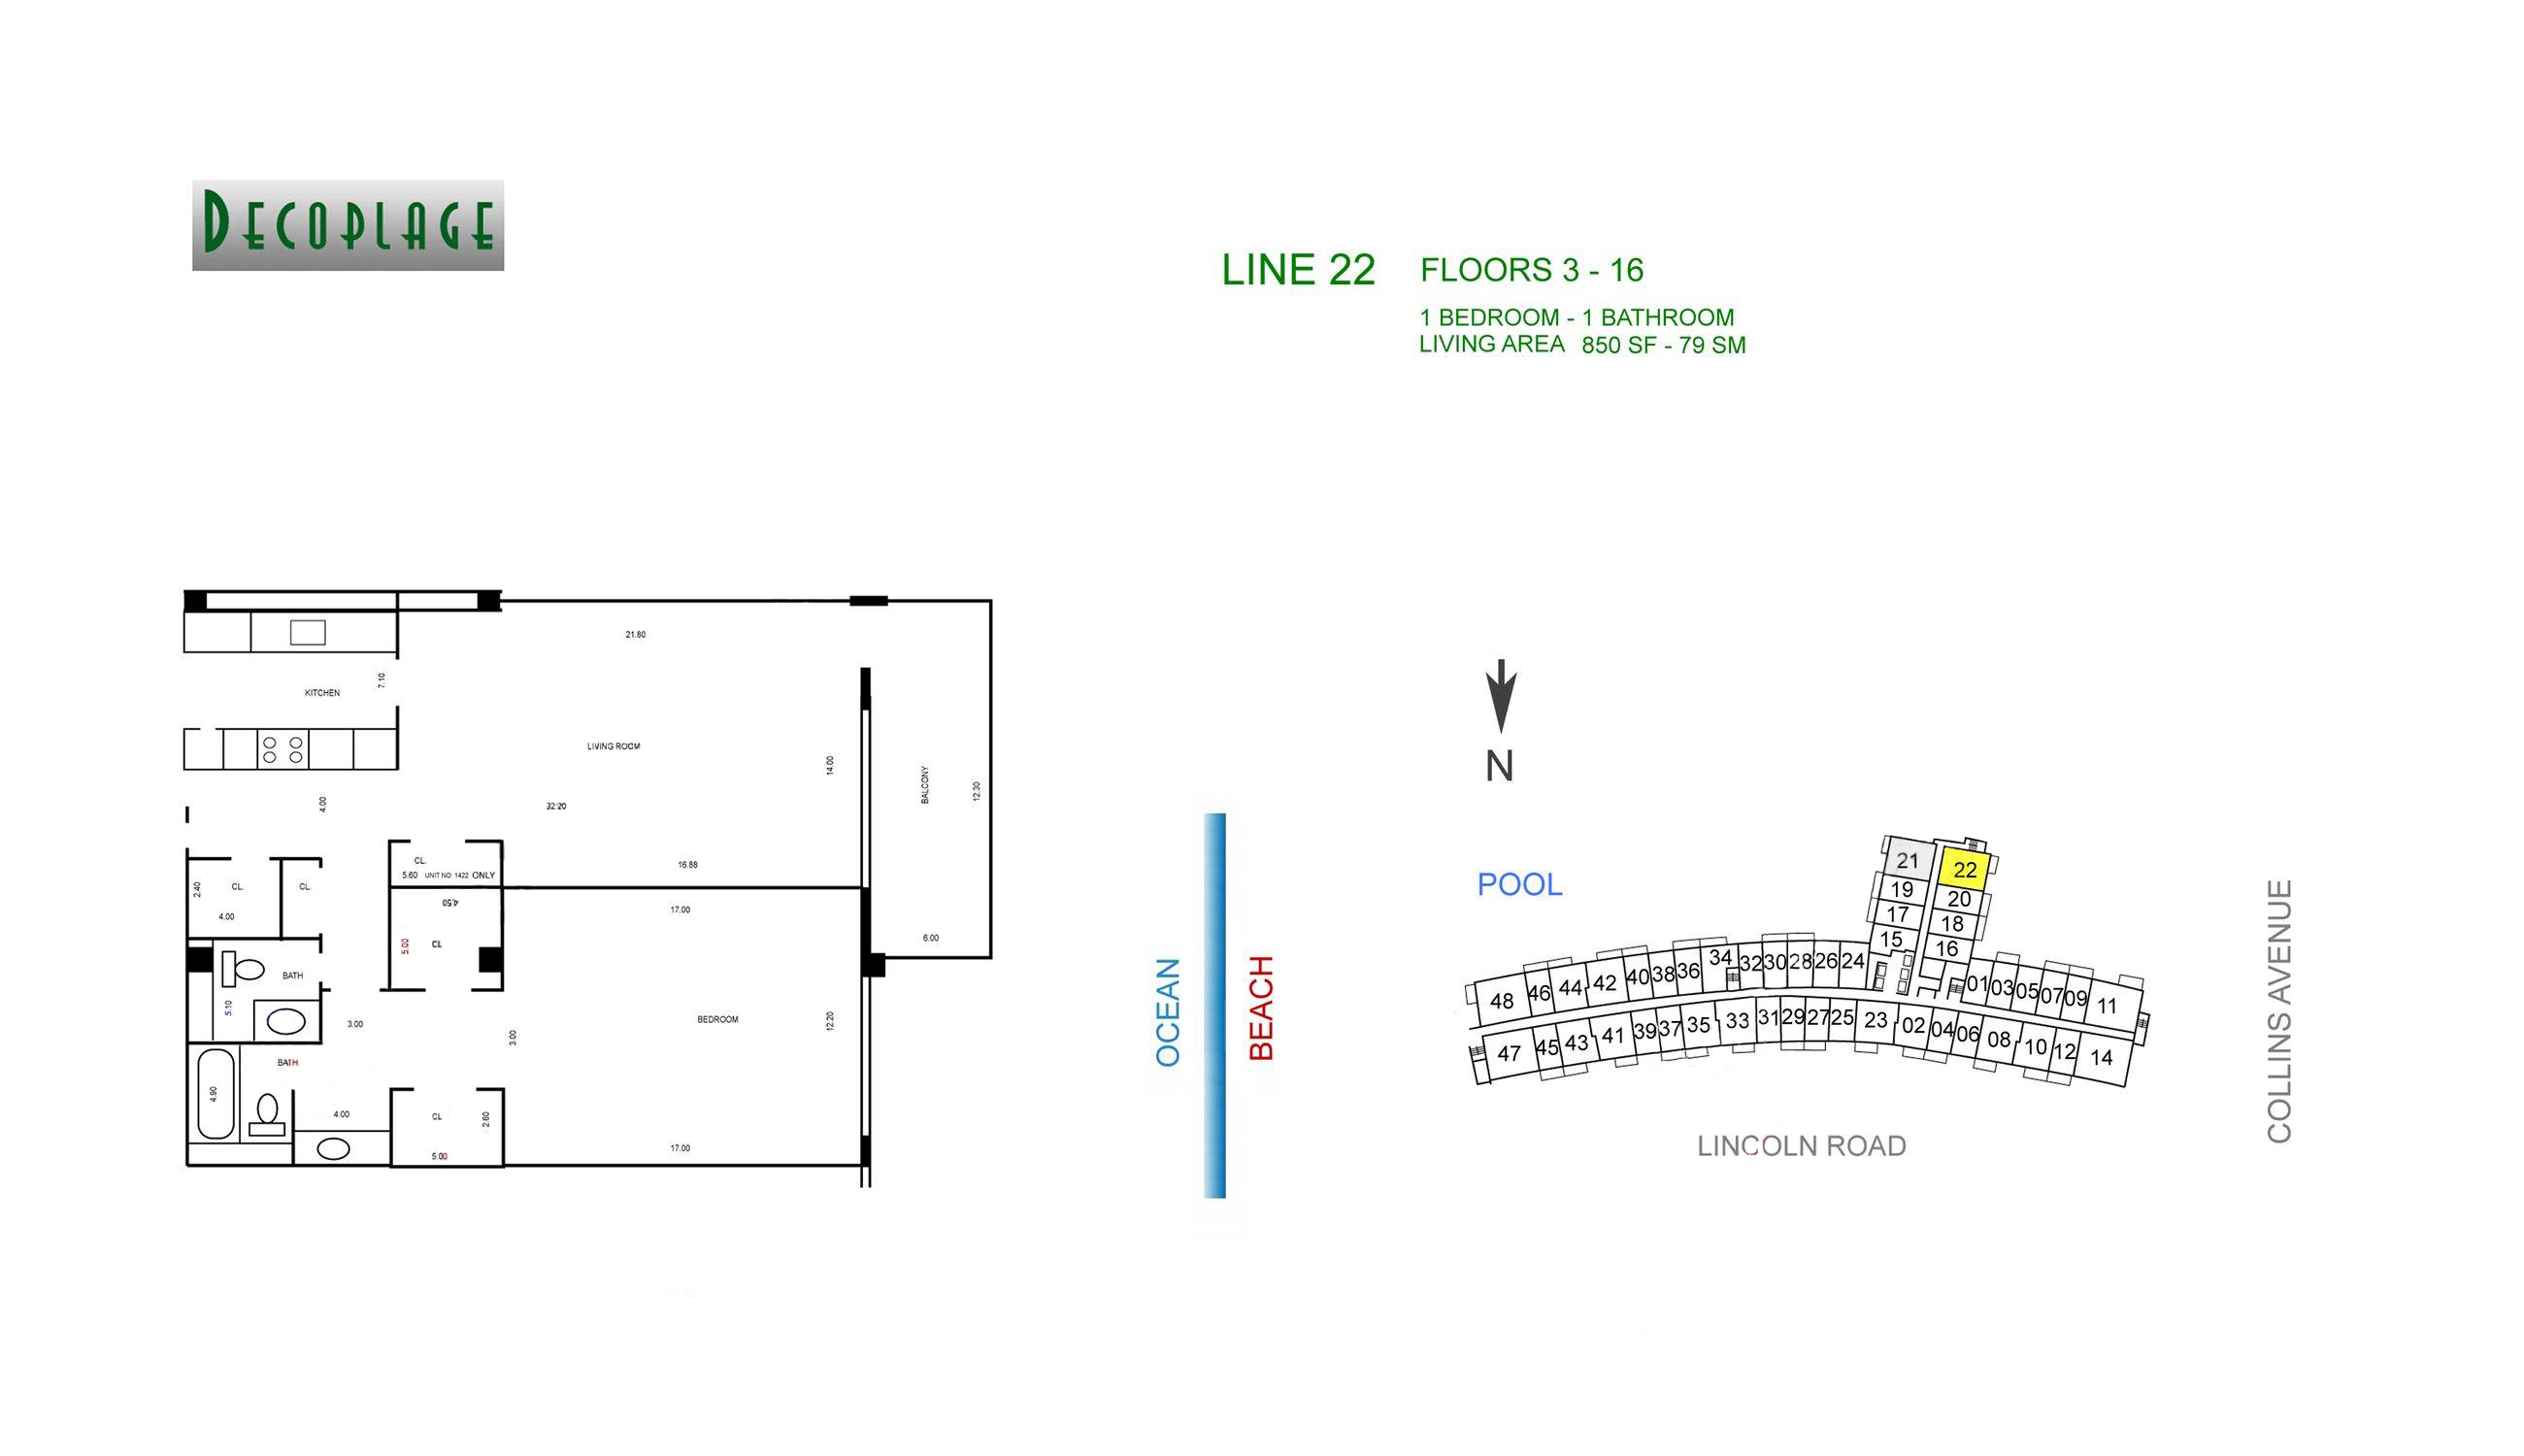 Decoplage Lines 22 Floors 3-16